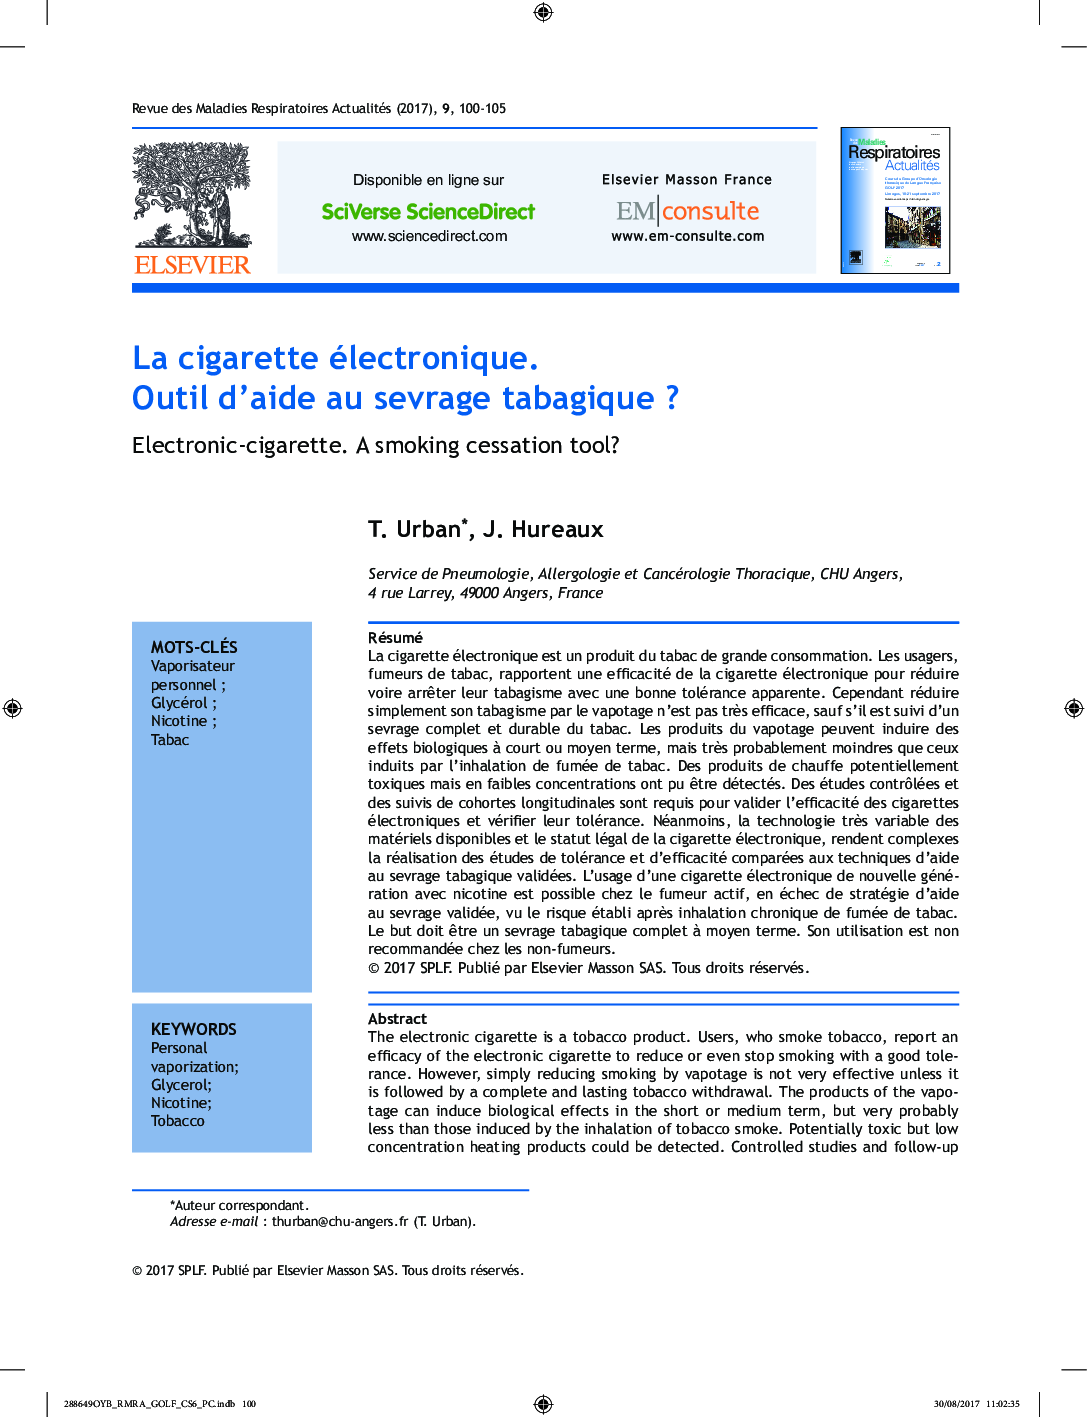 La cigarette électronique. Outil d'aide au sevrage tabagique ?